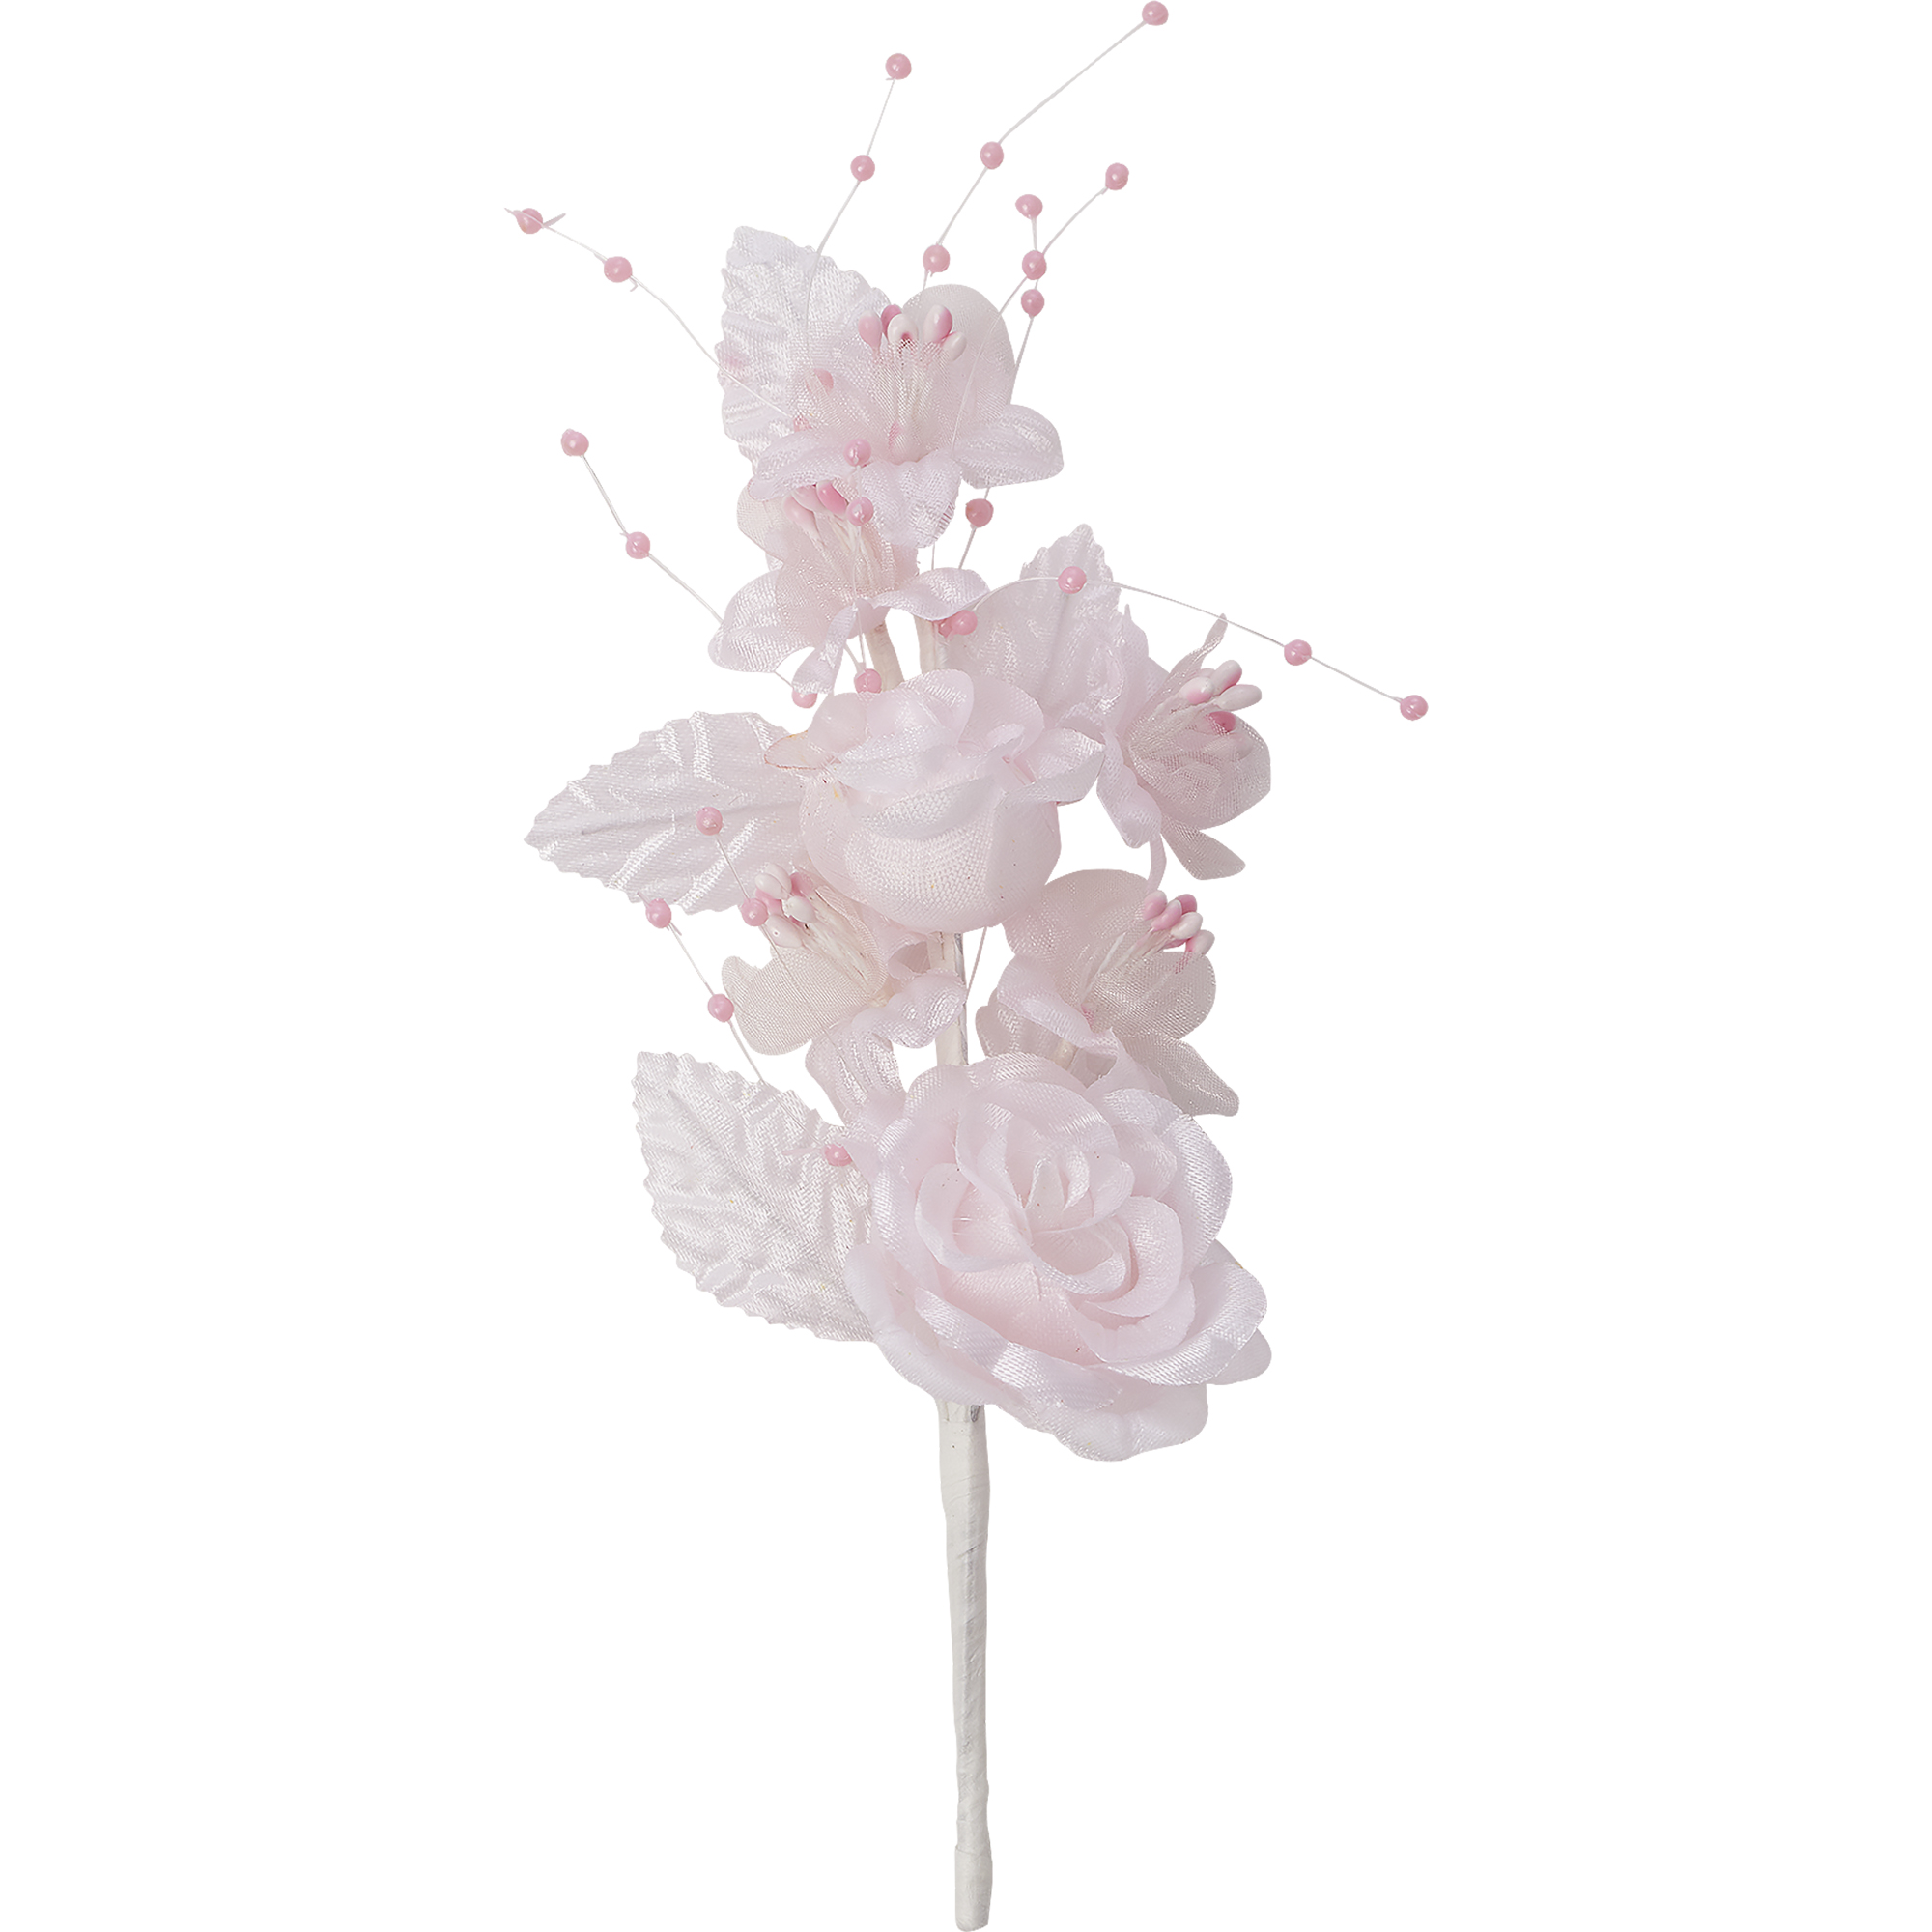 Artificial Flower Boutonniere 12pc/bag - Blush